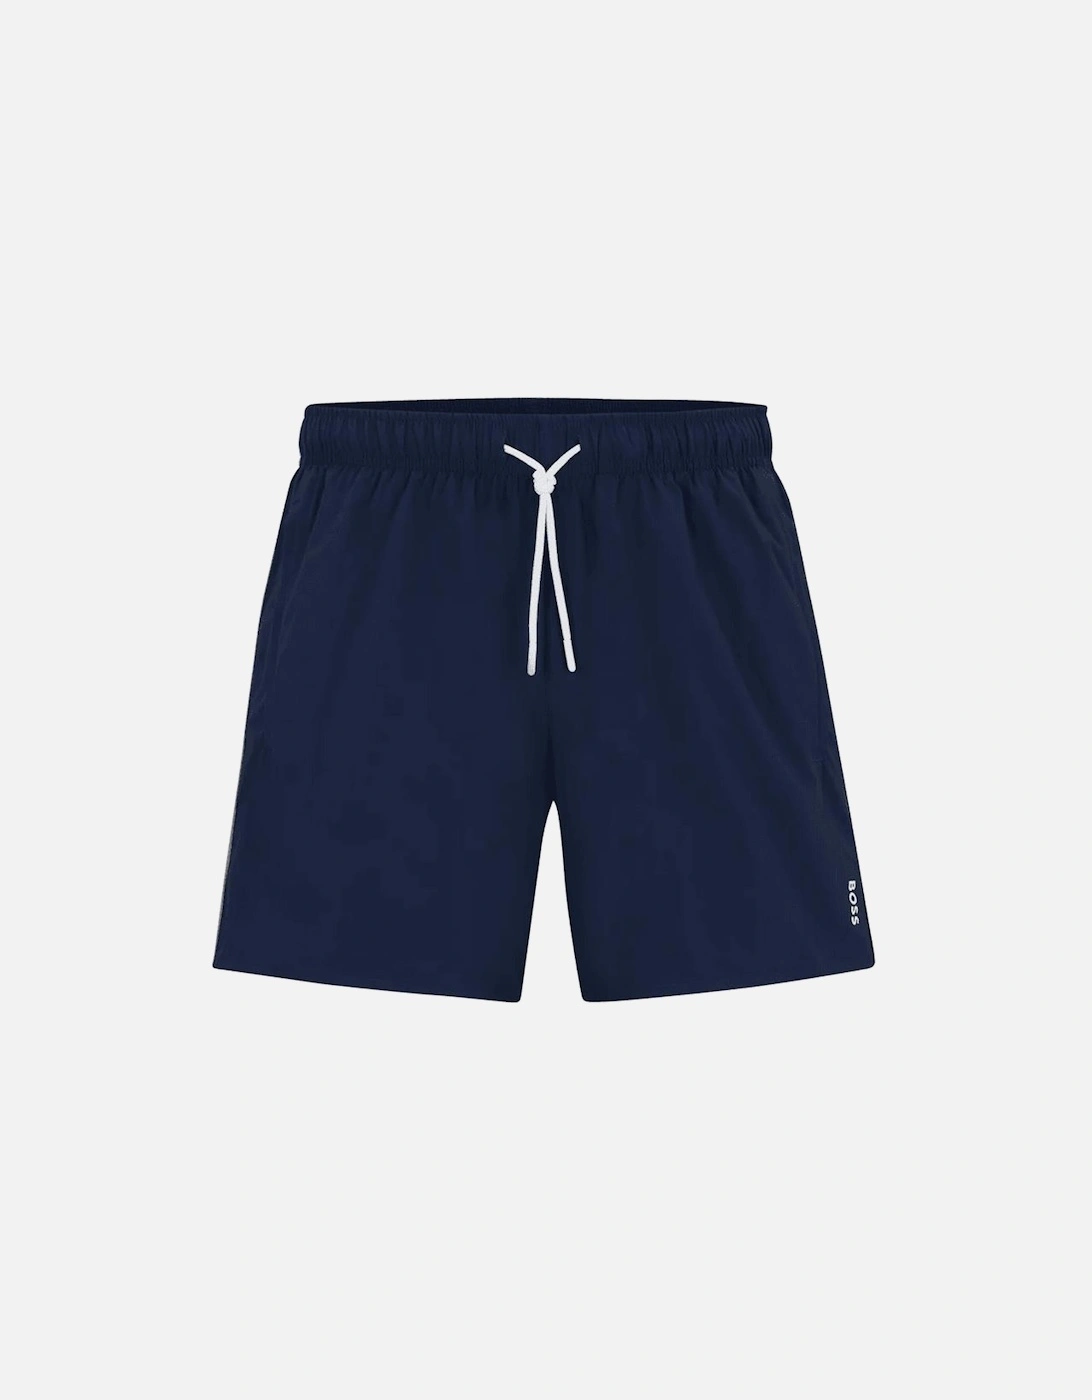 Iconic Stripe Logo Navy Swim Shorts, 3 of 2